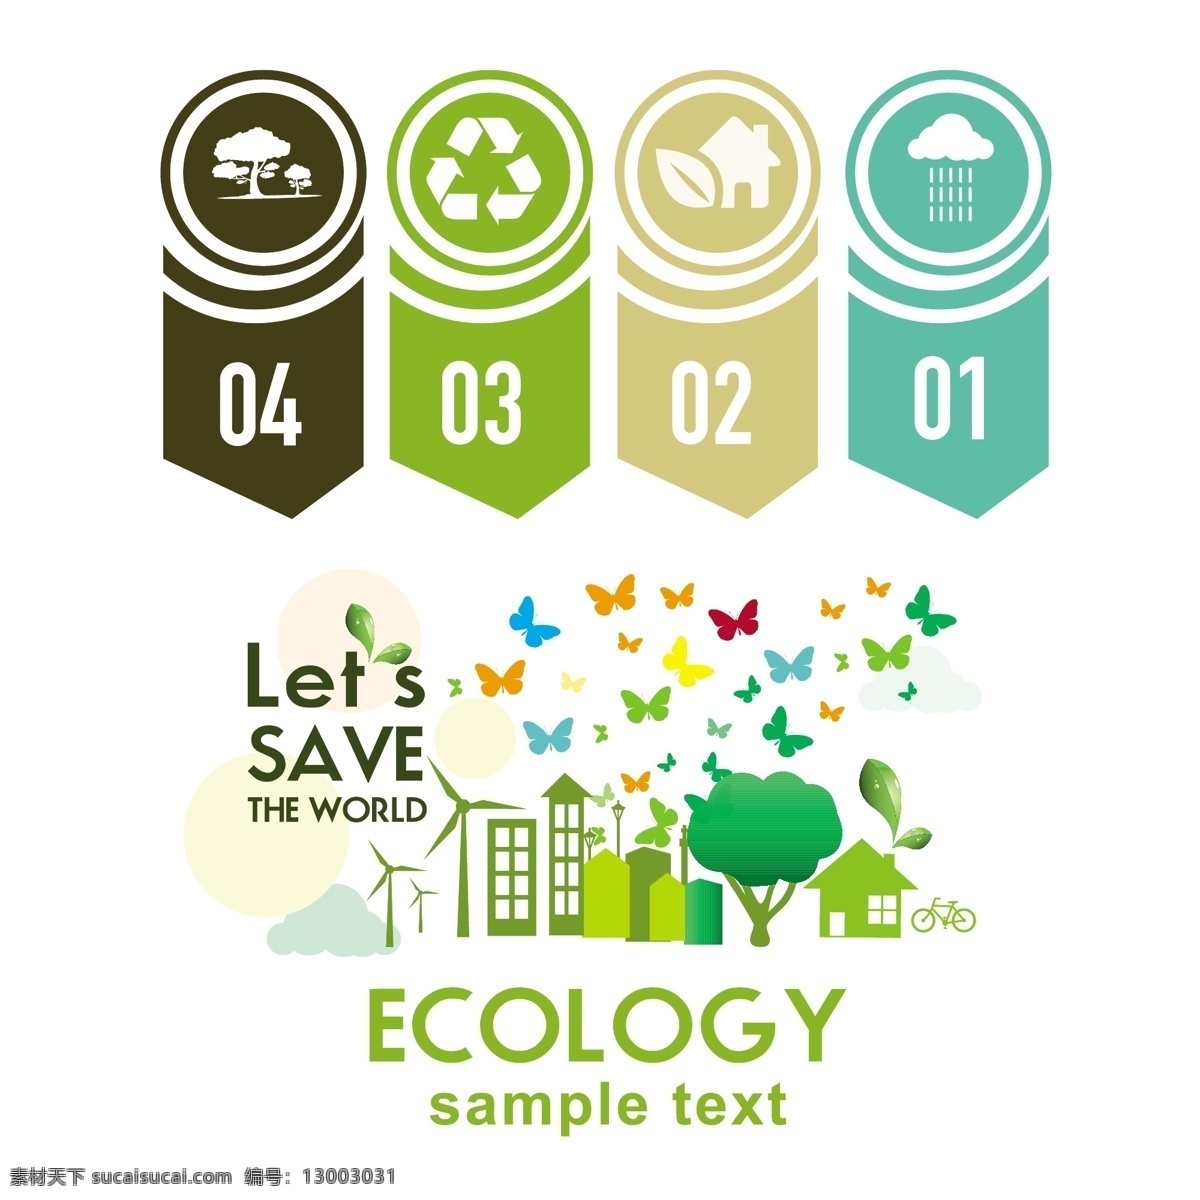 生态信息 环保 创意设计 eco 绿色 蝴蝶图案 循环 能源 节能 低碳 生态 回收 环保标志 ppt素材 底纹背景 商务金融 商业插画 白色